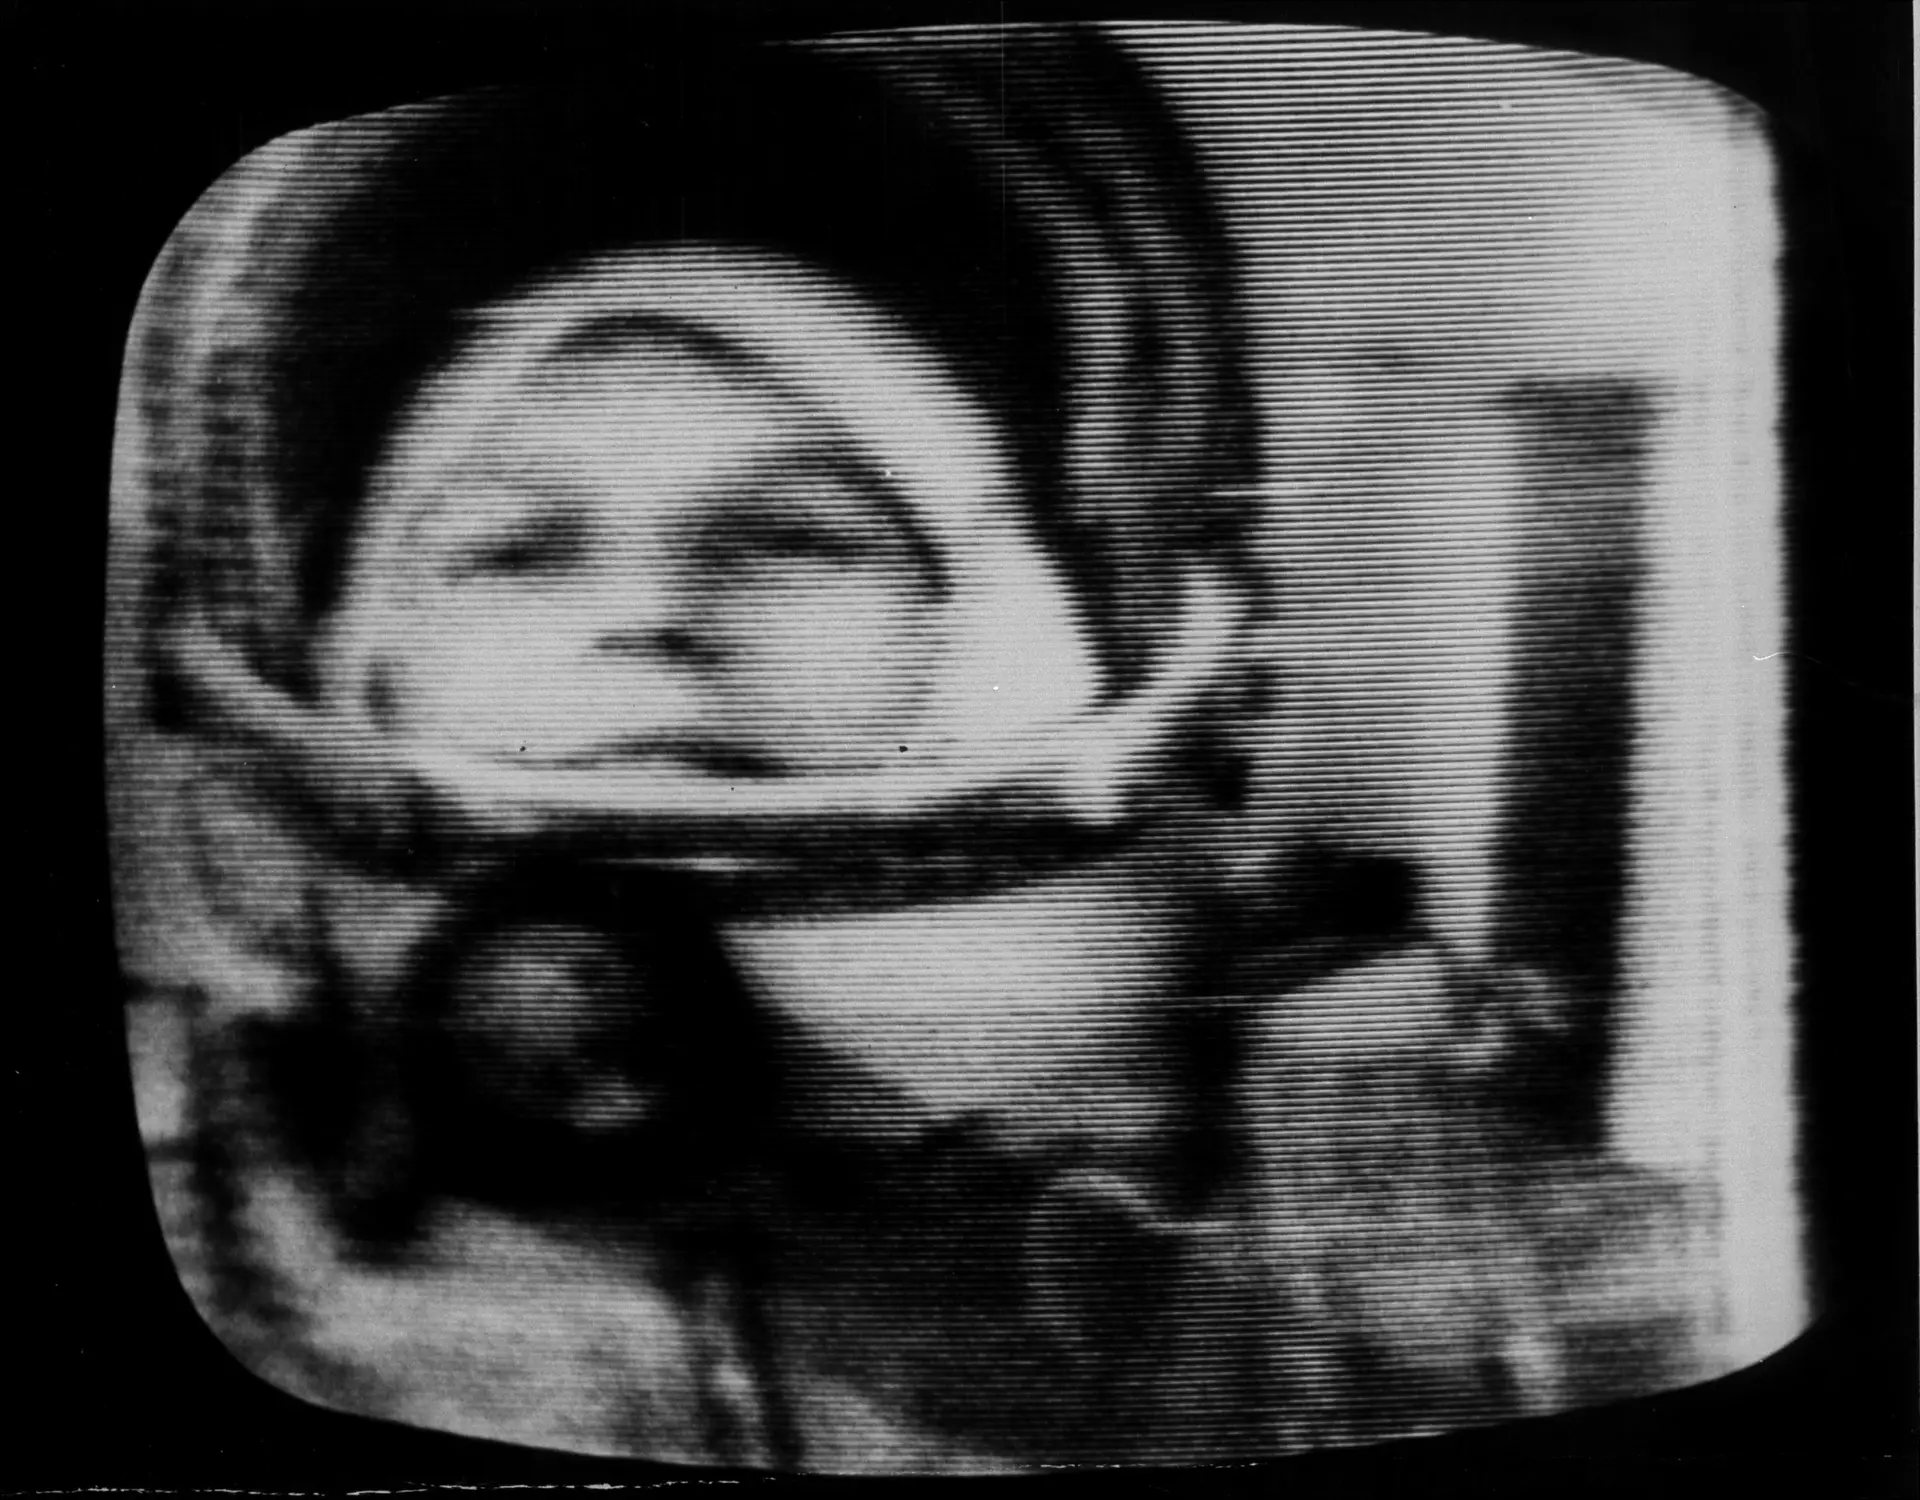 Valentina Tereshkova, de 26 anos, foi a primeira mulher cosmonauta que viajou para o espaço, a bordo da nave Vostok 6, a 16 de junho de 1963.